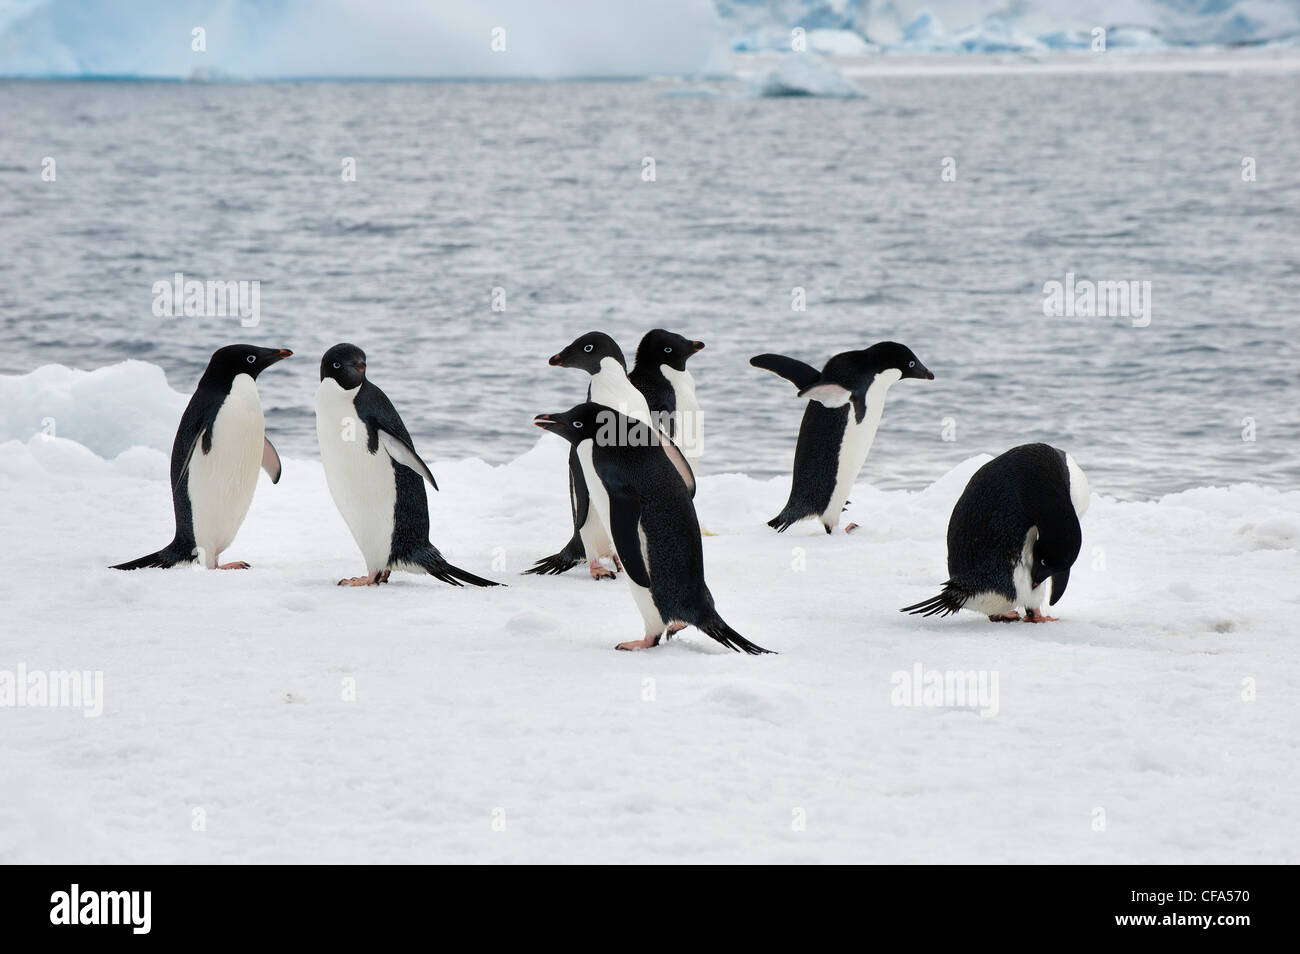 Group of Adelie penguins (Pygoscelis adeliae) on an iceberg, Paulet Island, Antarctic peninsula Stock Photo